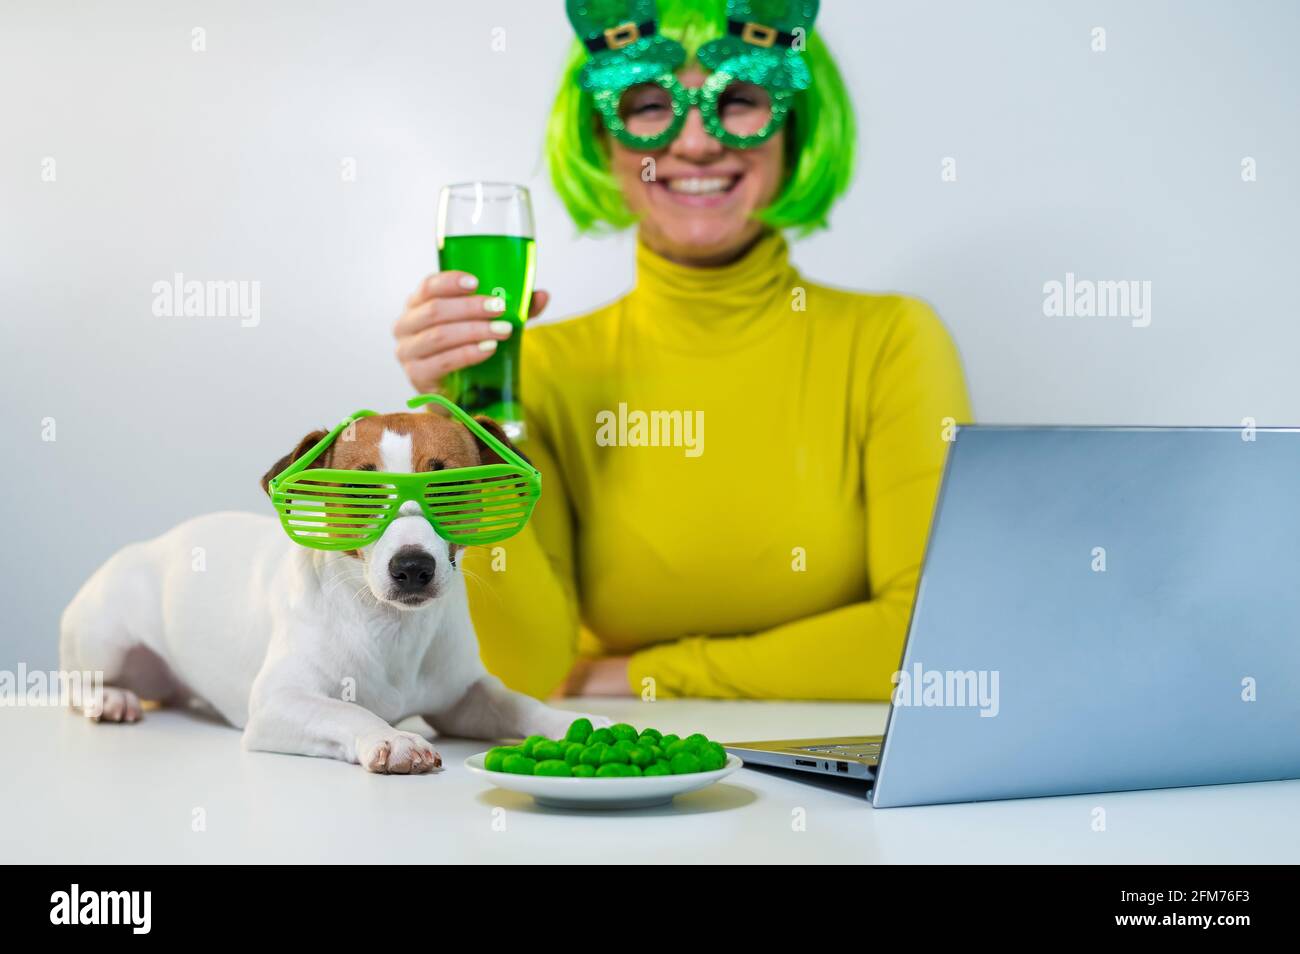 Una mujer joven en una peluca verde y vasos alegres bebe cerveza y pica nueces glaseadas. Una chica se sienta con un perro en una mesa y celebra el día de San patricio Foto de stock